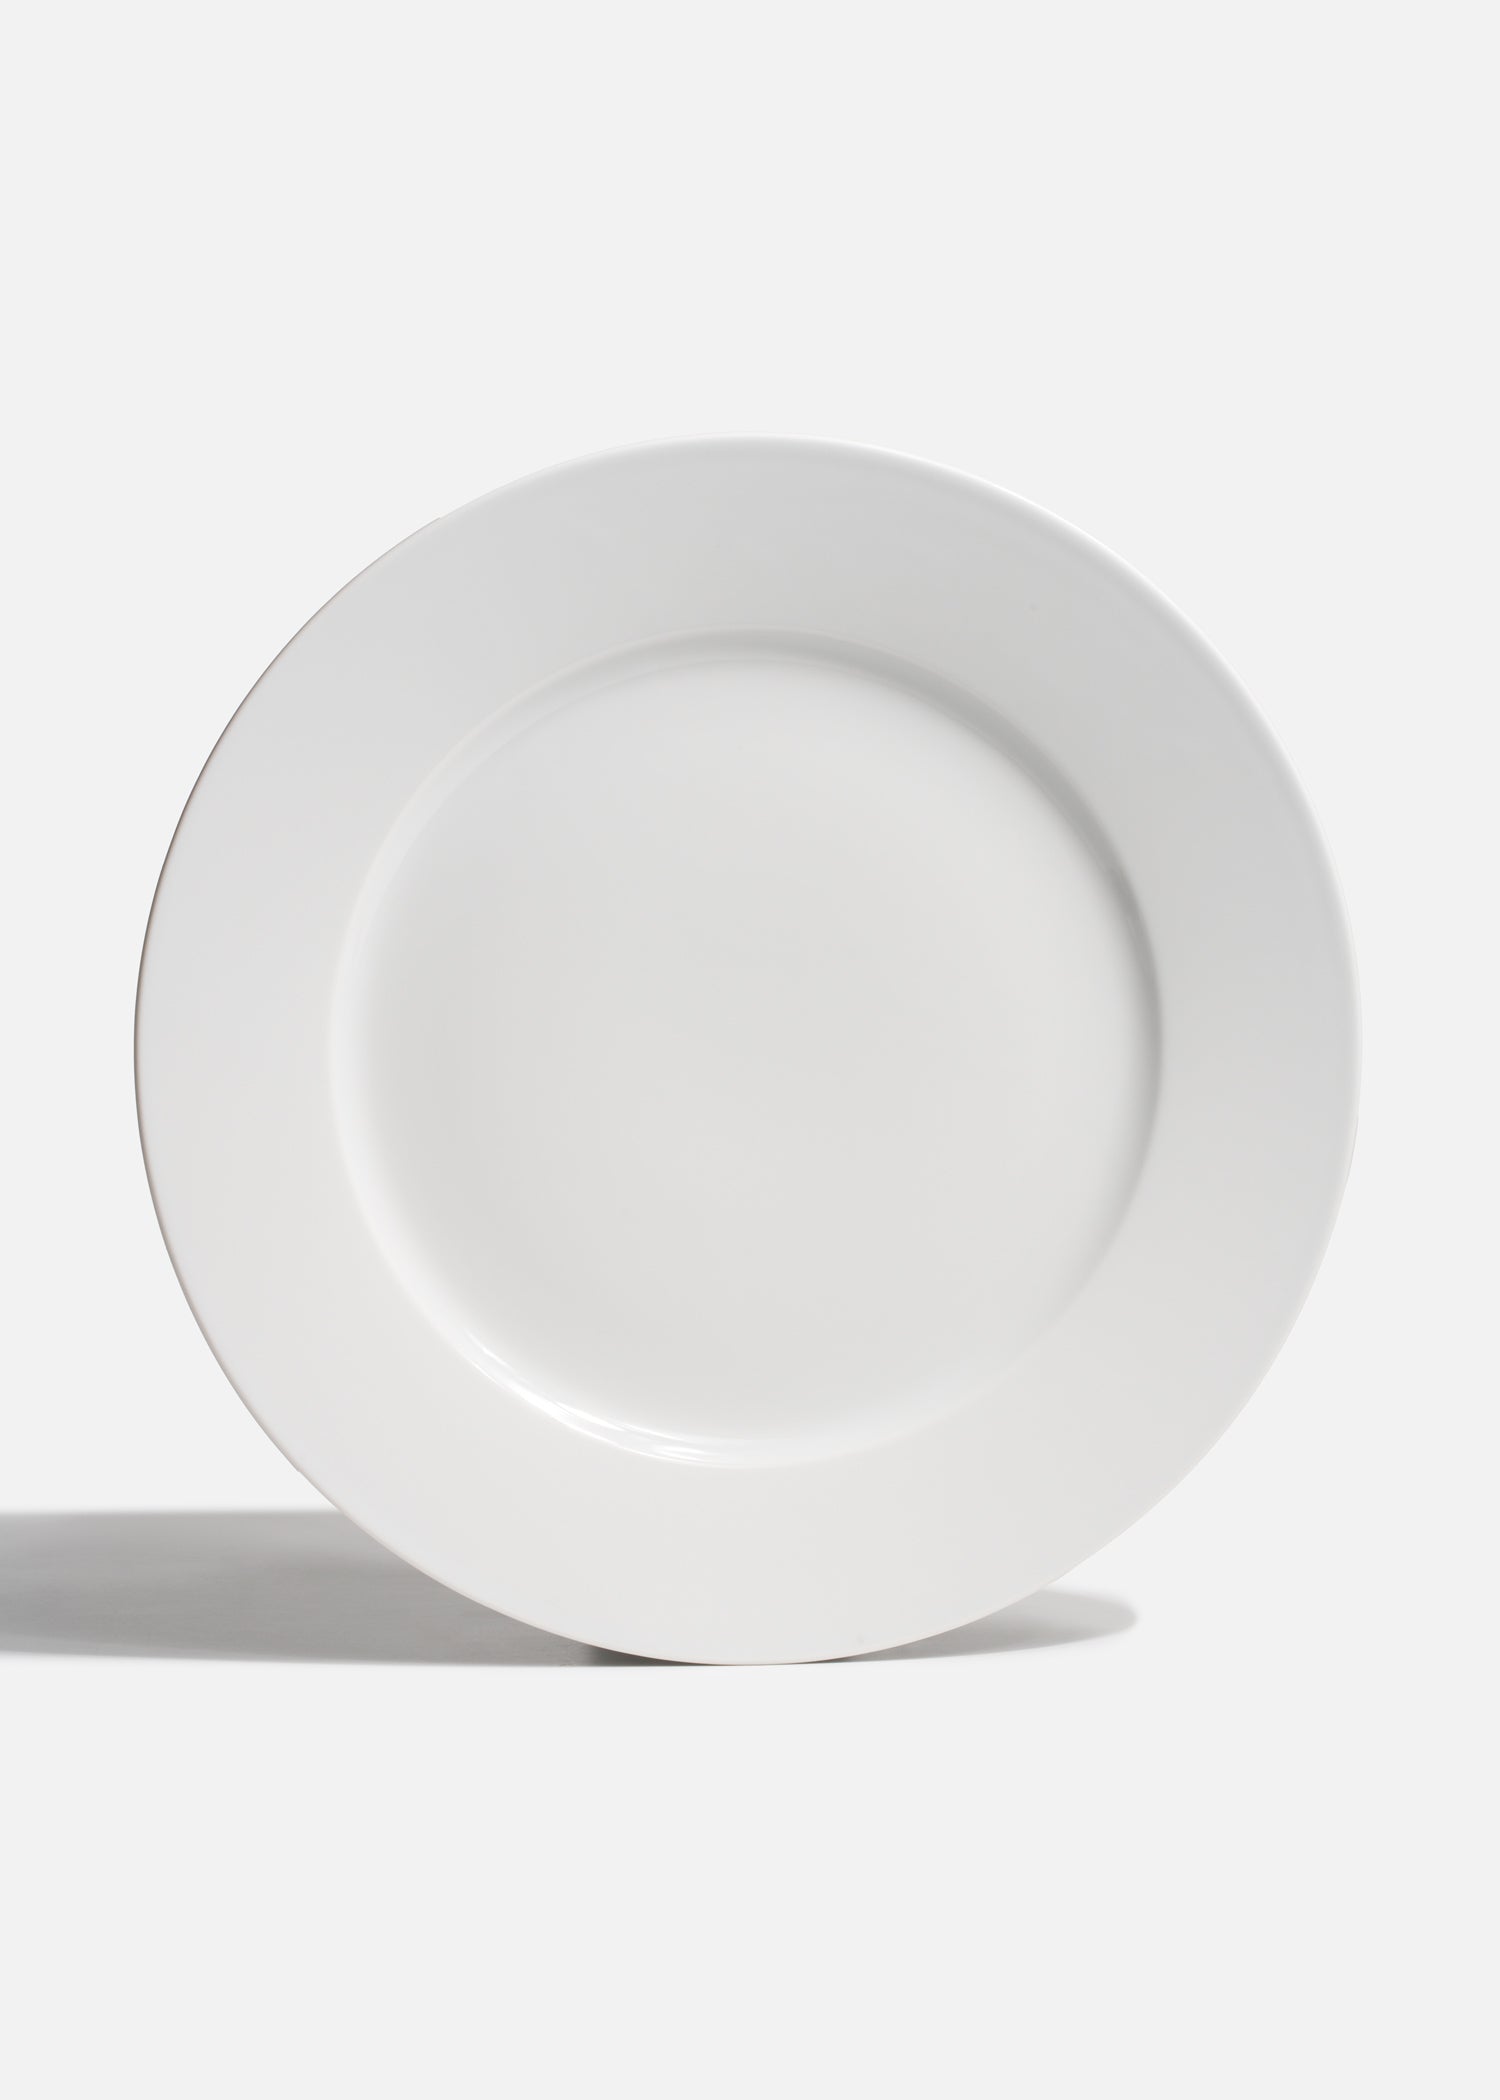 precio platos porcelana blanco maha